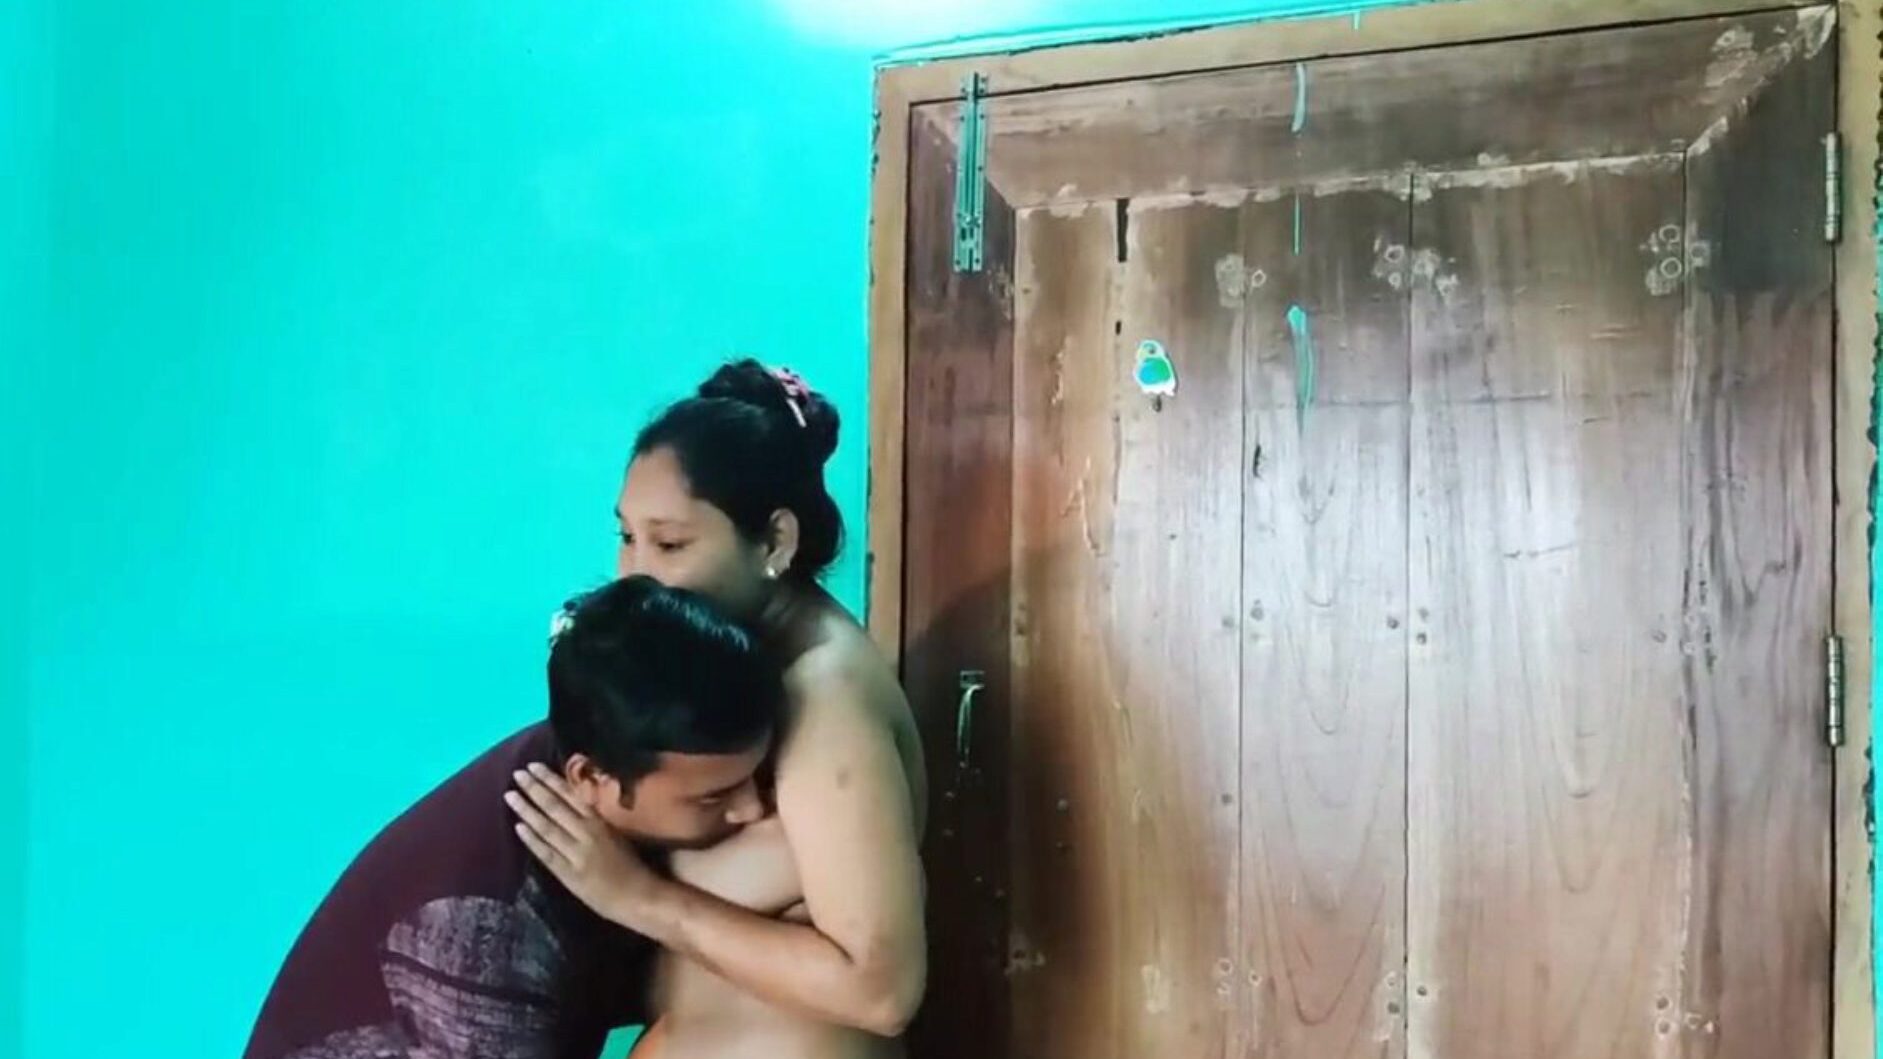 desi bengali sex video nøgen, gratis asiatisk porno 6c: xhamster se desi bengali sex video nøgen episode på xhamster, den fedeste hd fuck-fest tube web ressource med masser af gratis-for-alle asiatiske xxn sex & anal pornografi vids